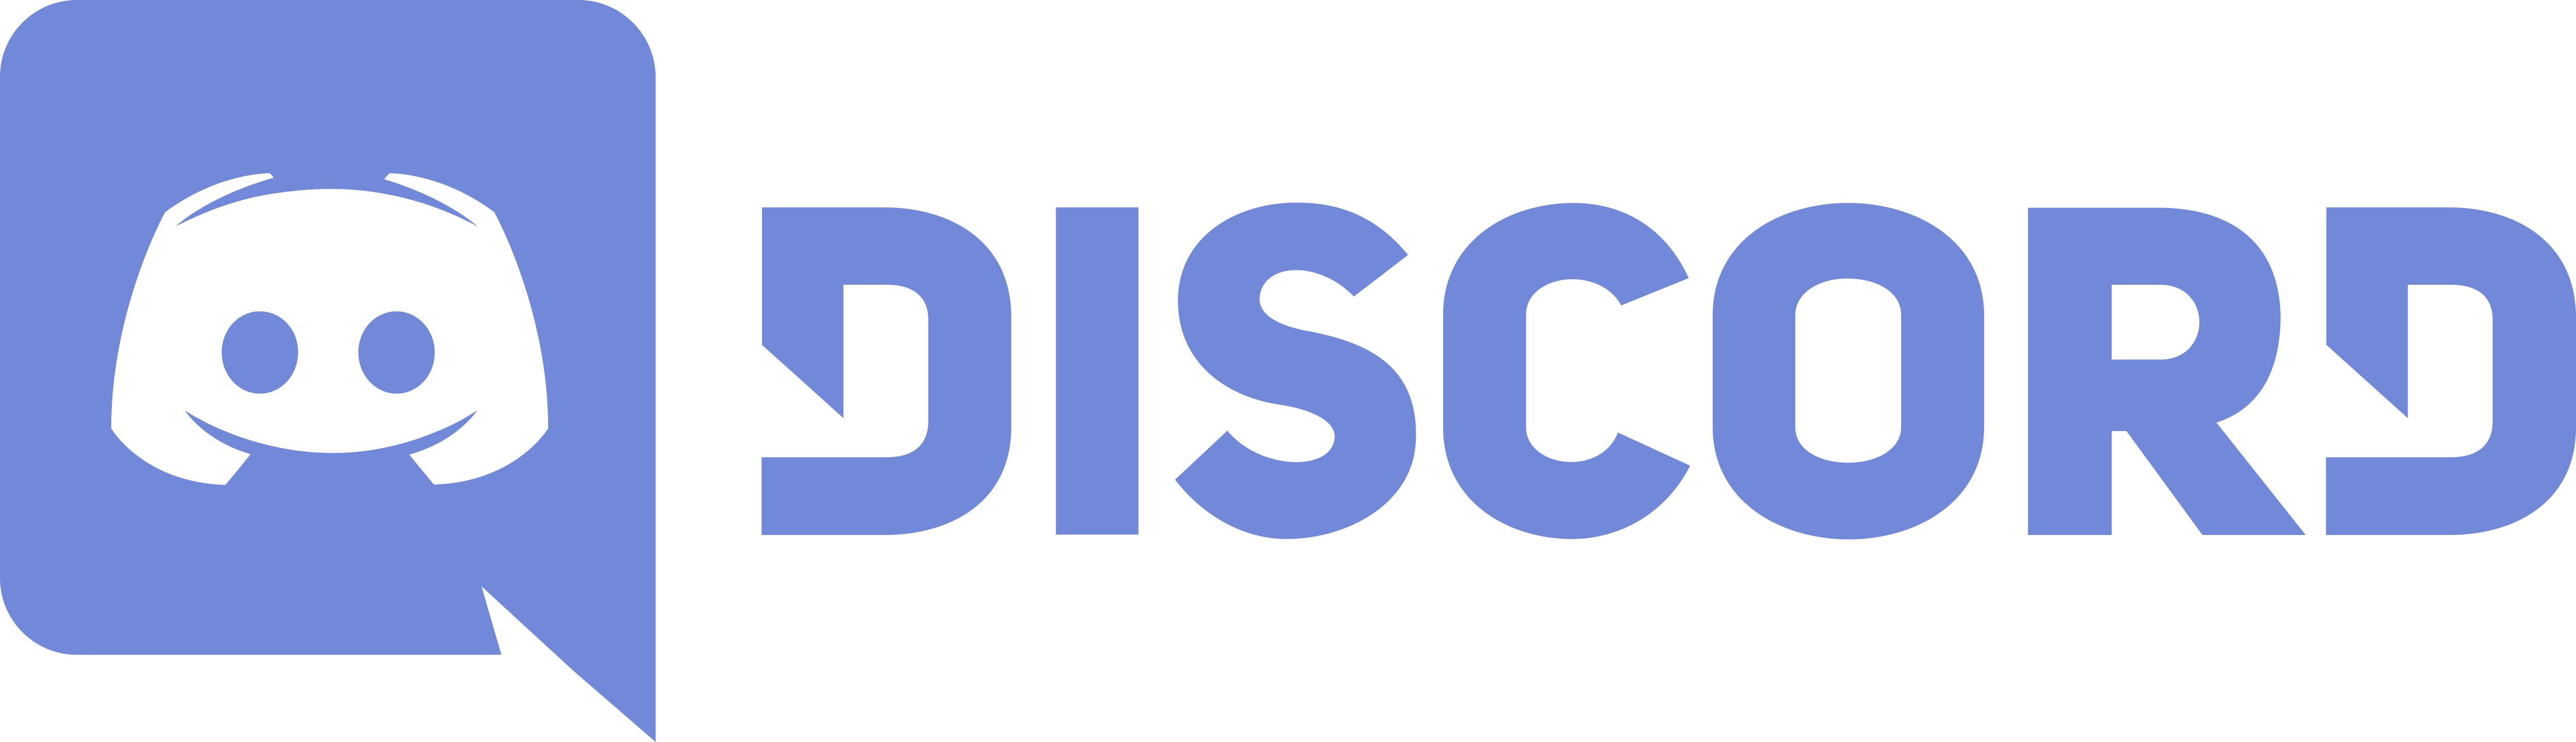 Discord – Logos Download